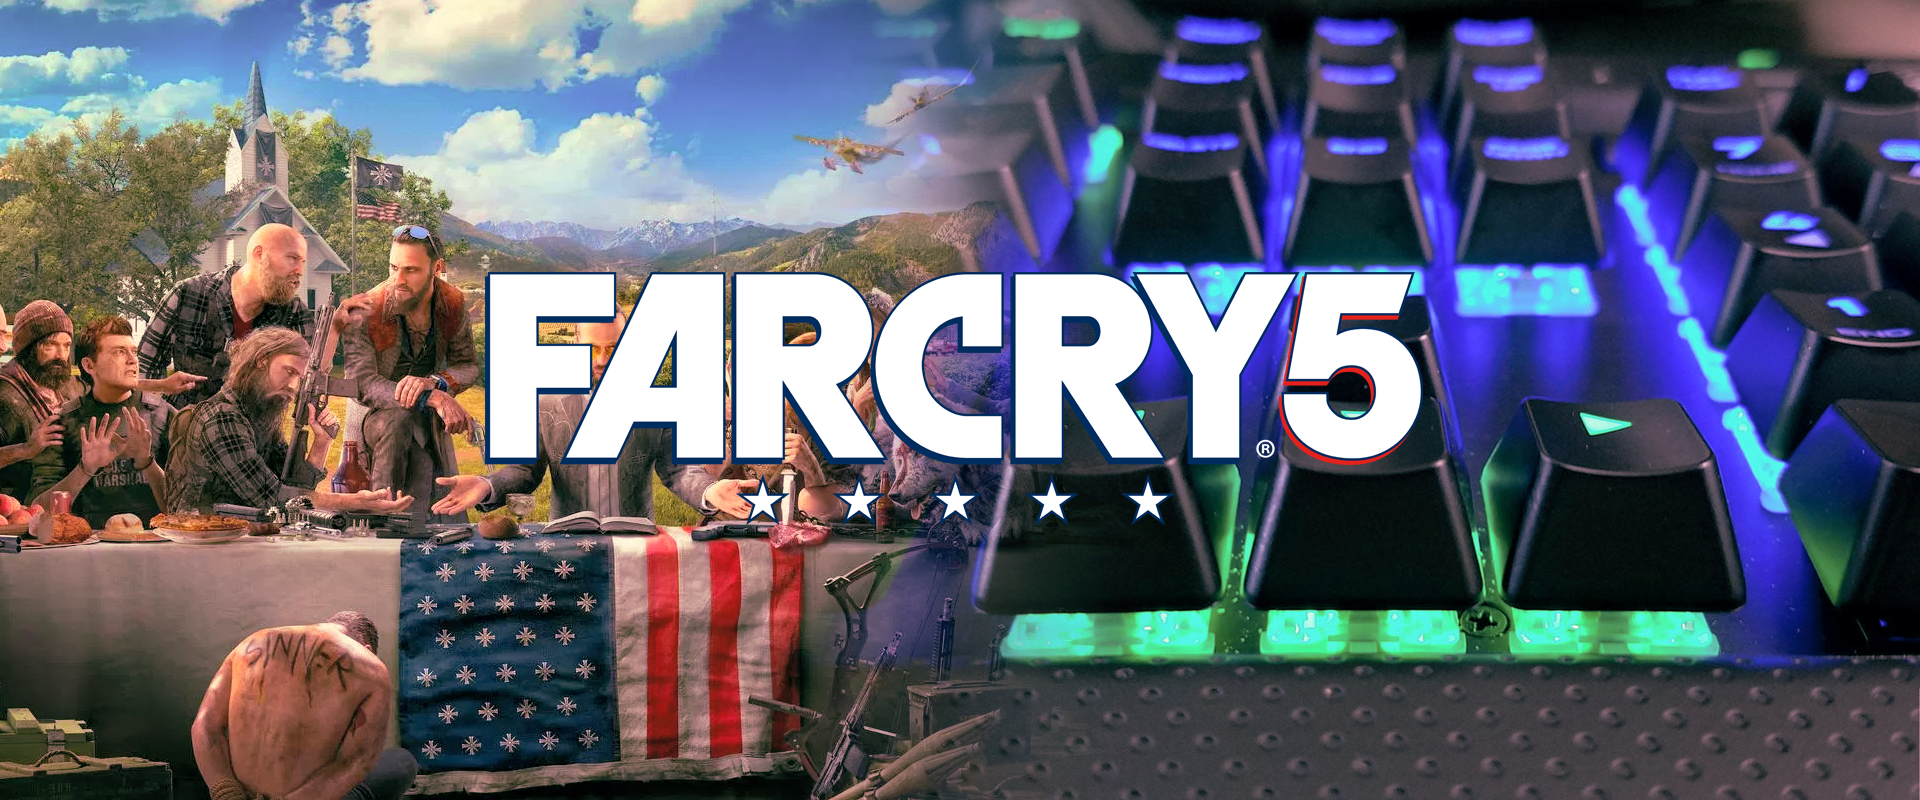 Bármit csinálsz a Far Cry 5-ben, a Corsair billentyűzeted világítása alkalmazkodni fog hozzá